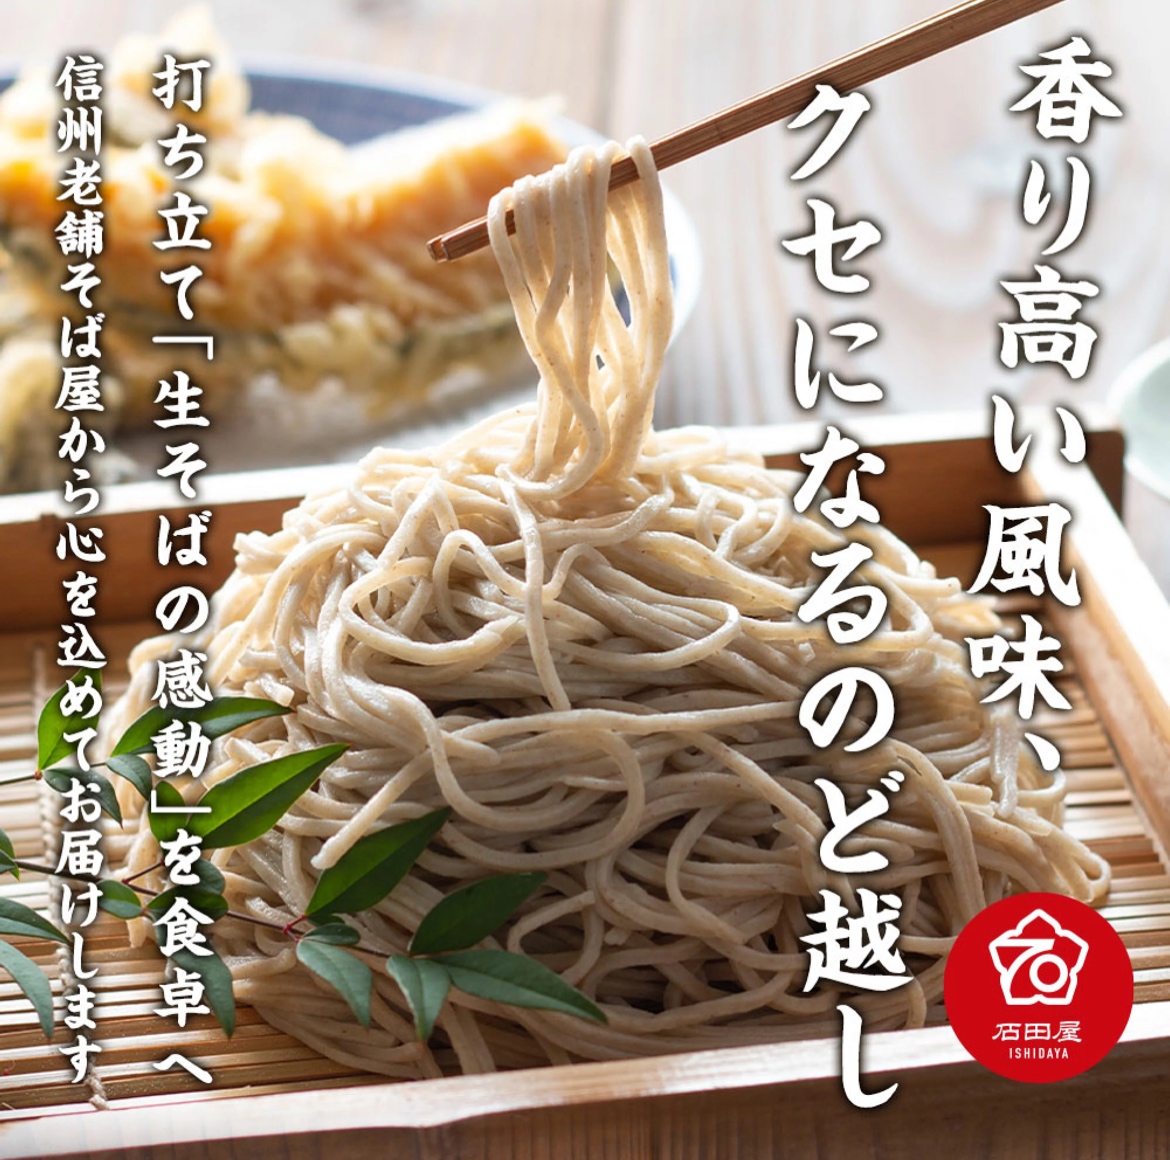 信州十割ぼくち蕎麦(富倉そば)